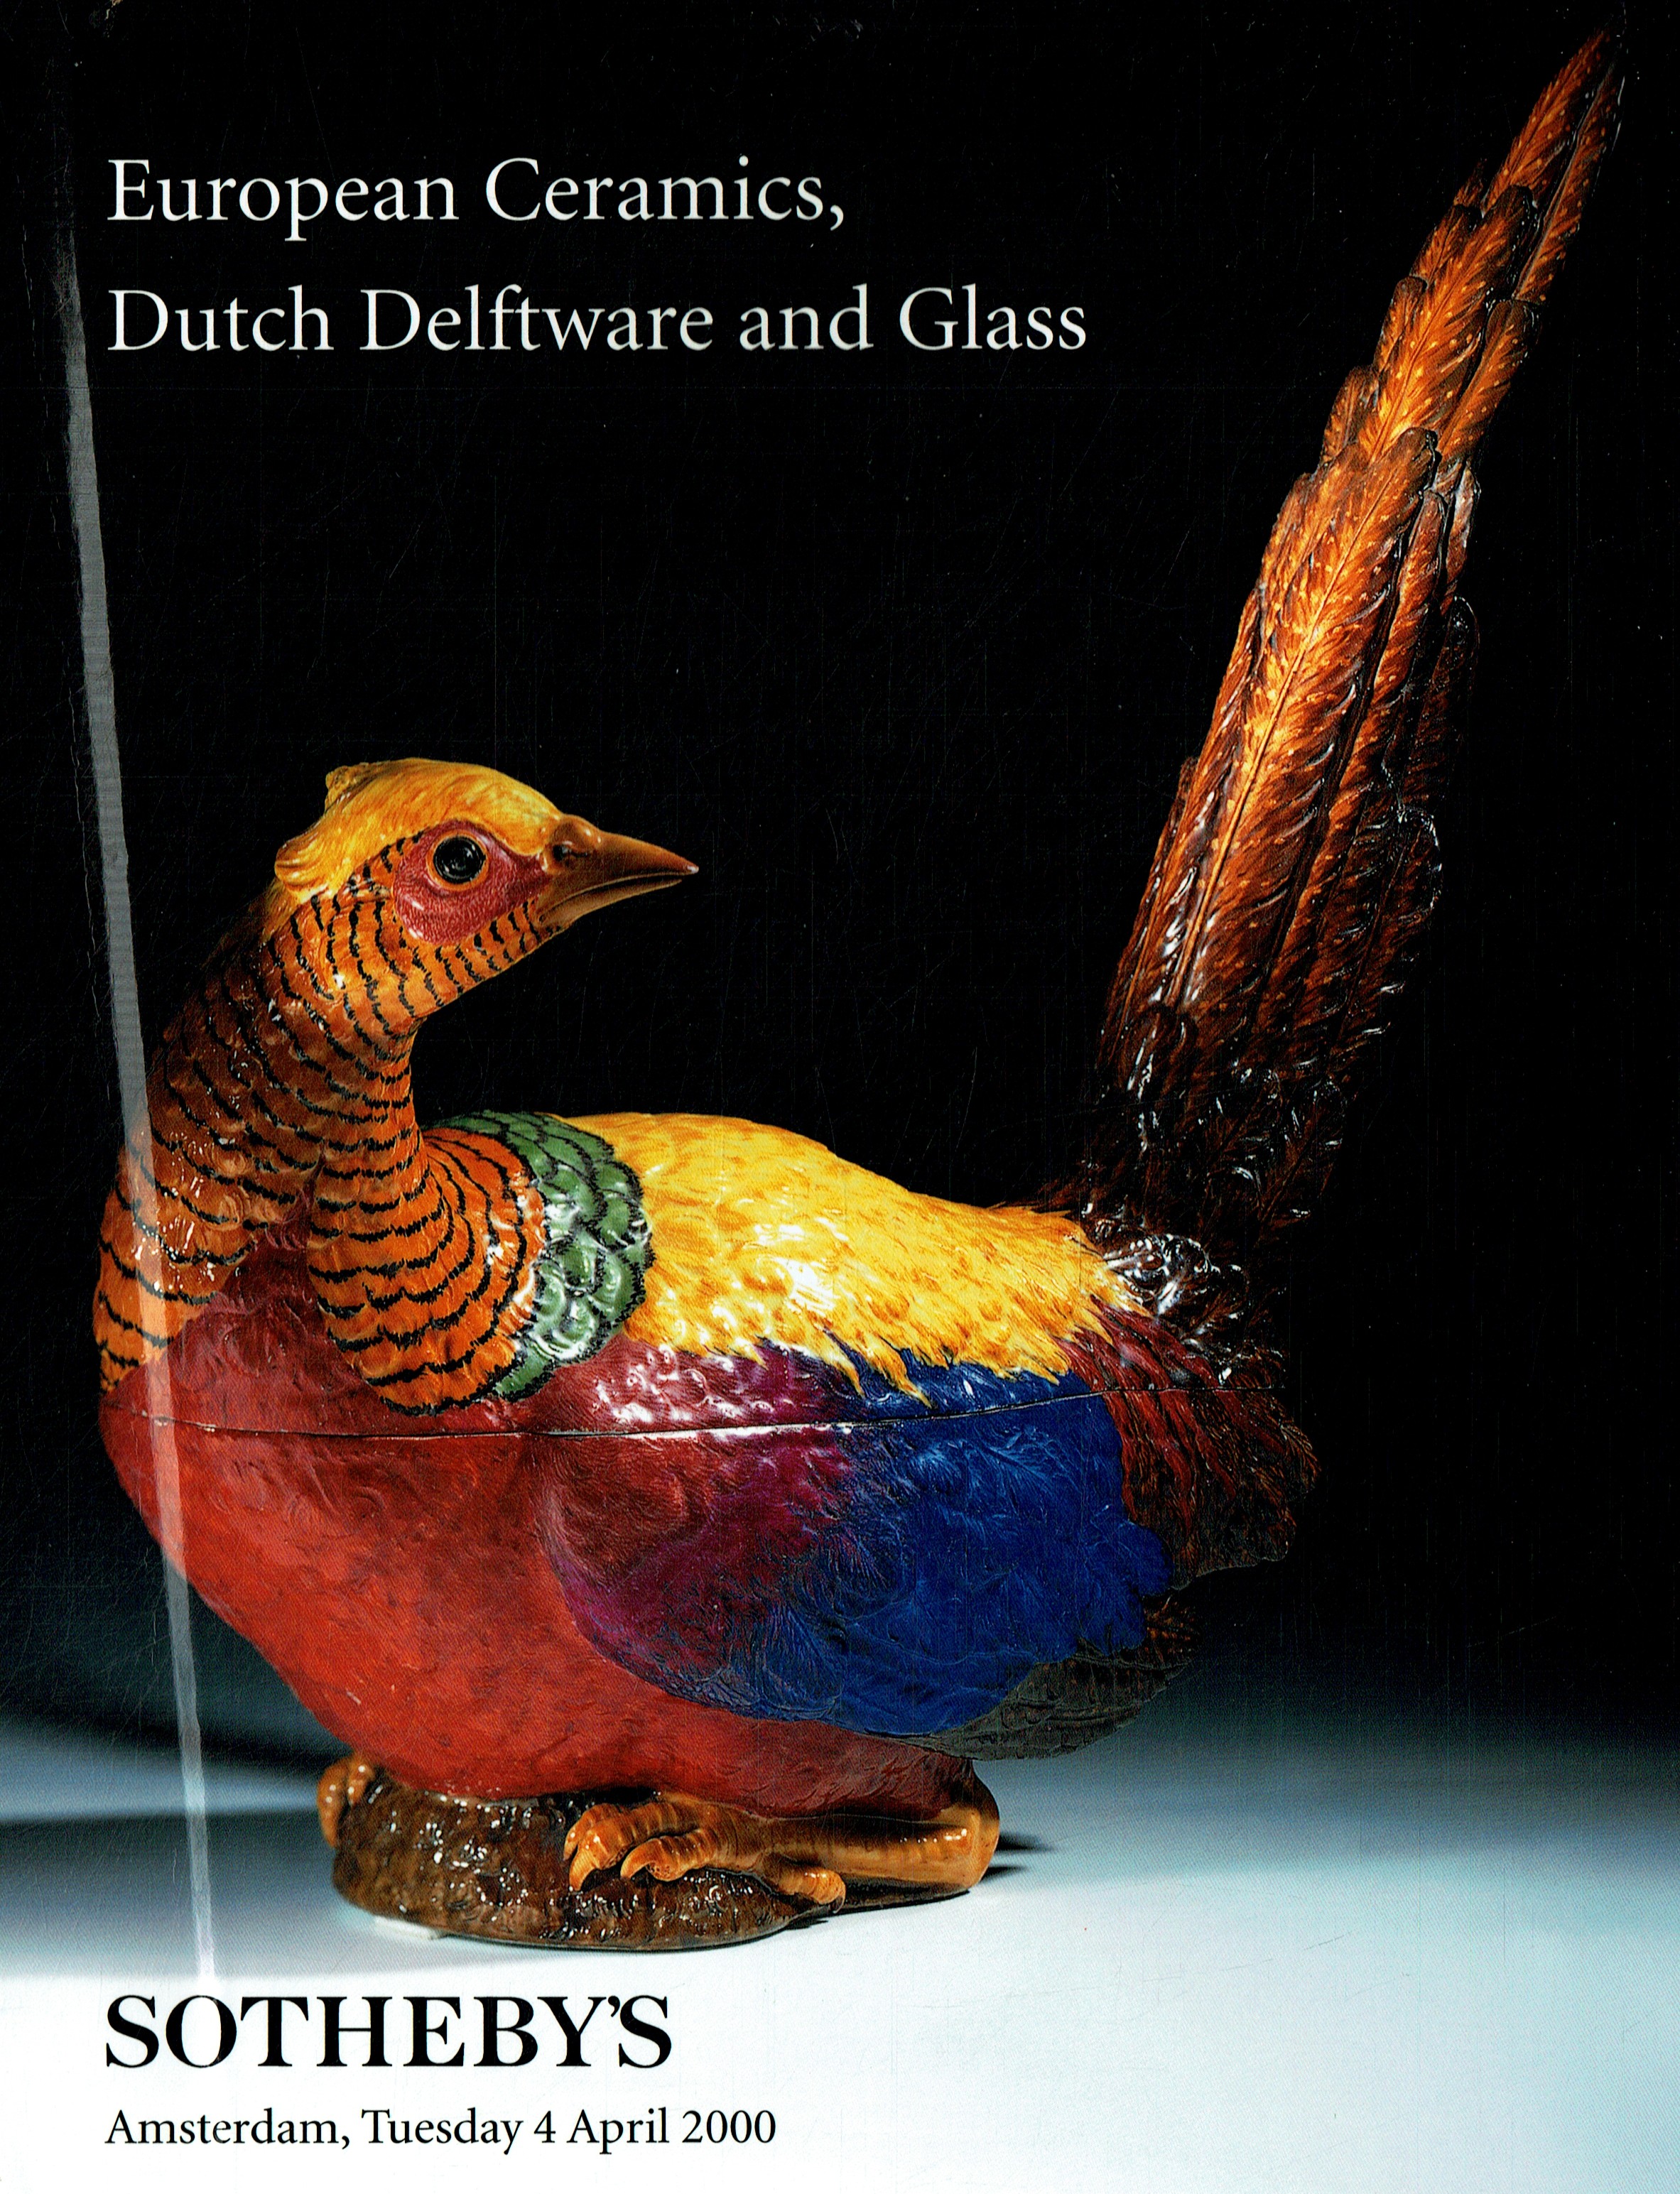 Sothebys April 2000 European Ceramics, Dutch Delftware & Glass (Digitial Only)